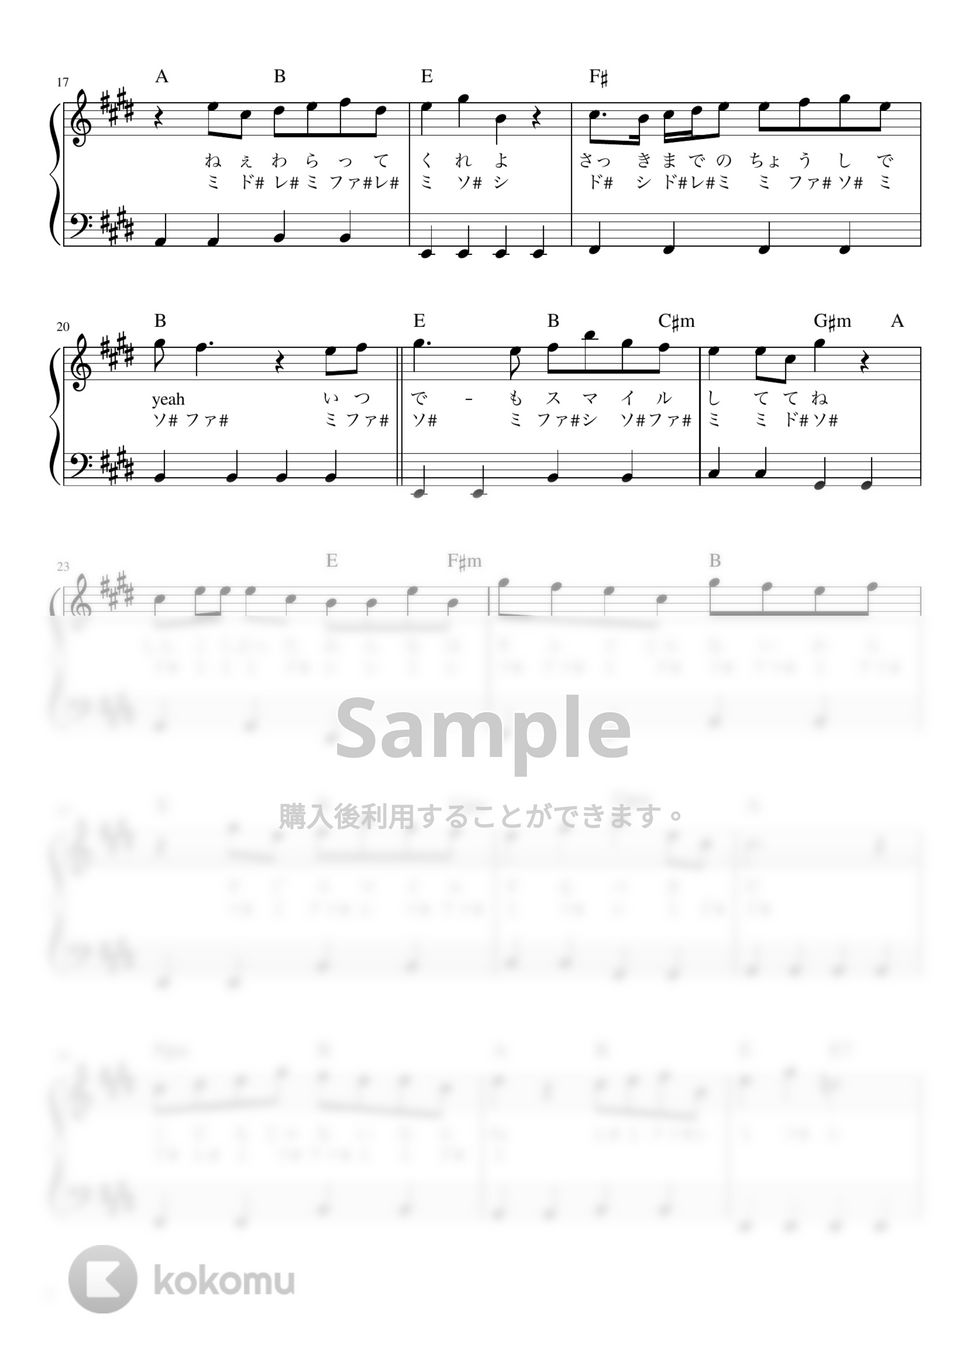 森七菜 - スマイル (かんたん / 歌詞付き / ドレミ付き / 初心者) by piano.tokyo